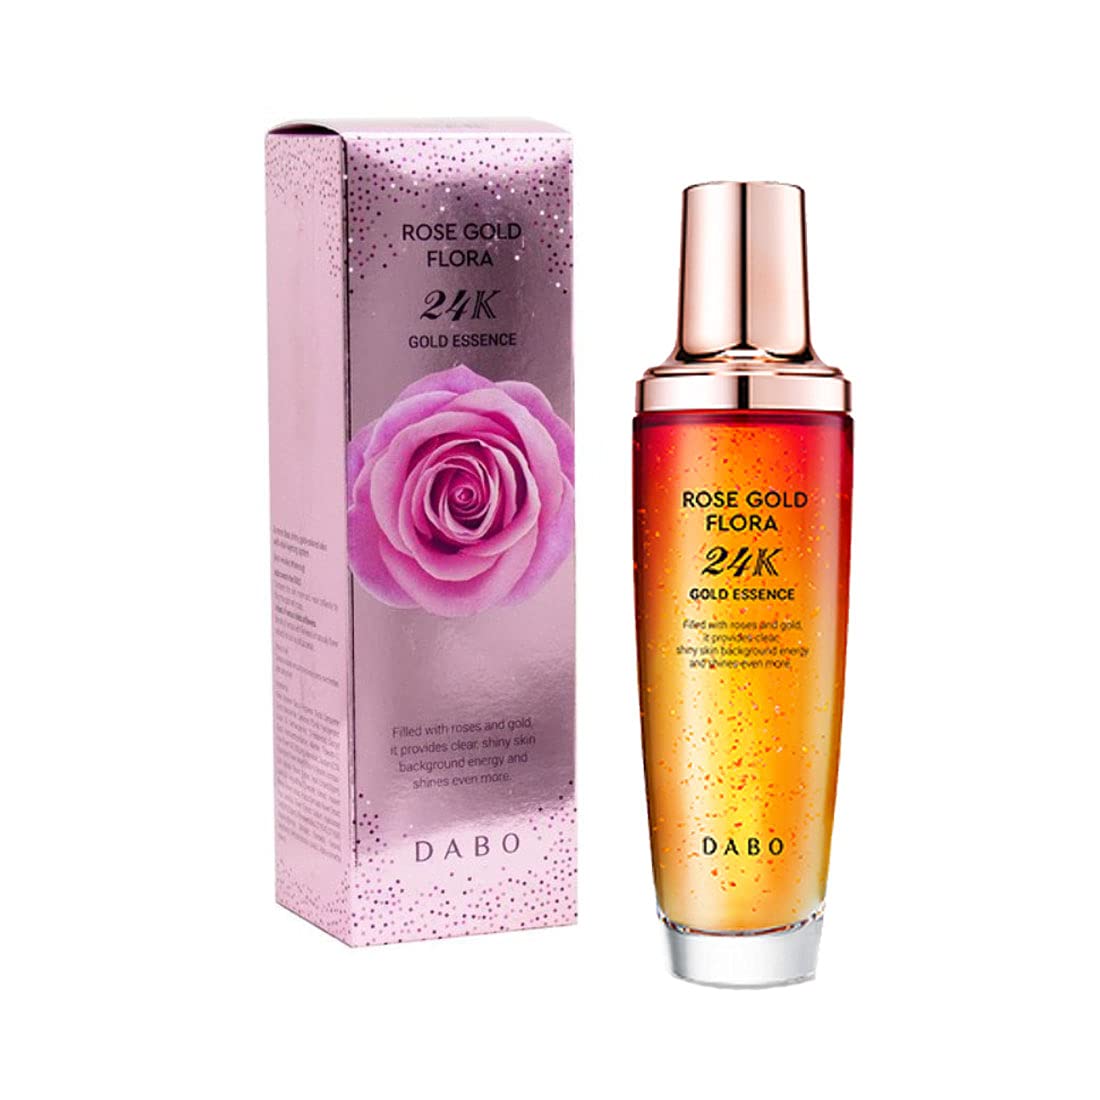 DABO Rose Gold Flora 24K Essence 130ml moisturizes wrinkles Whitening